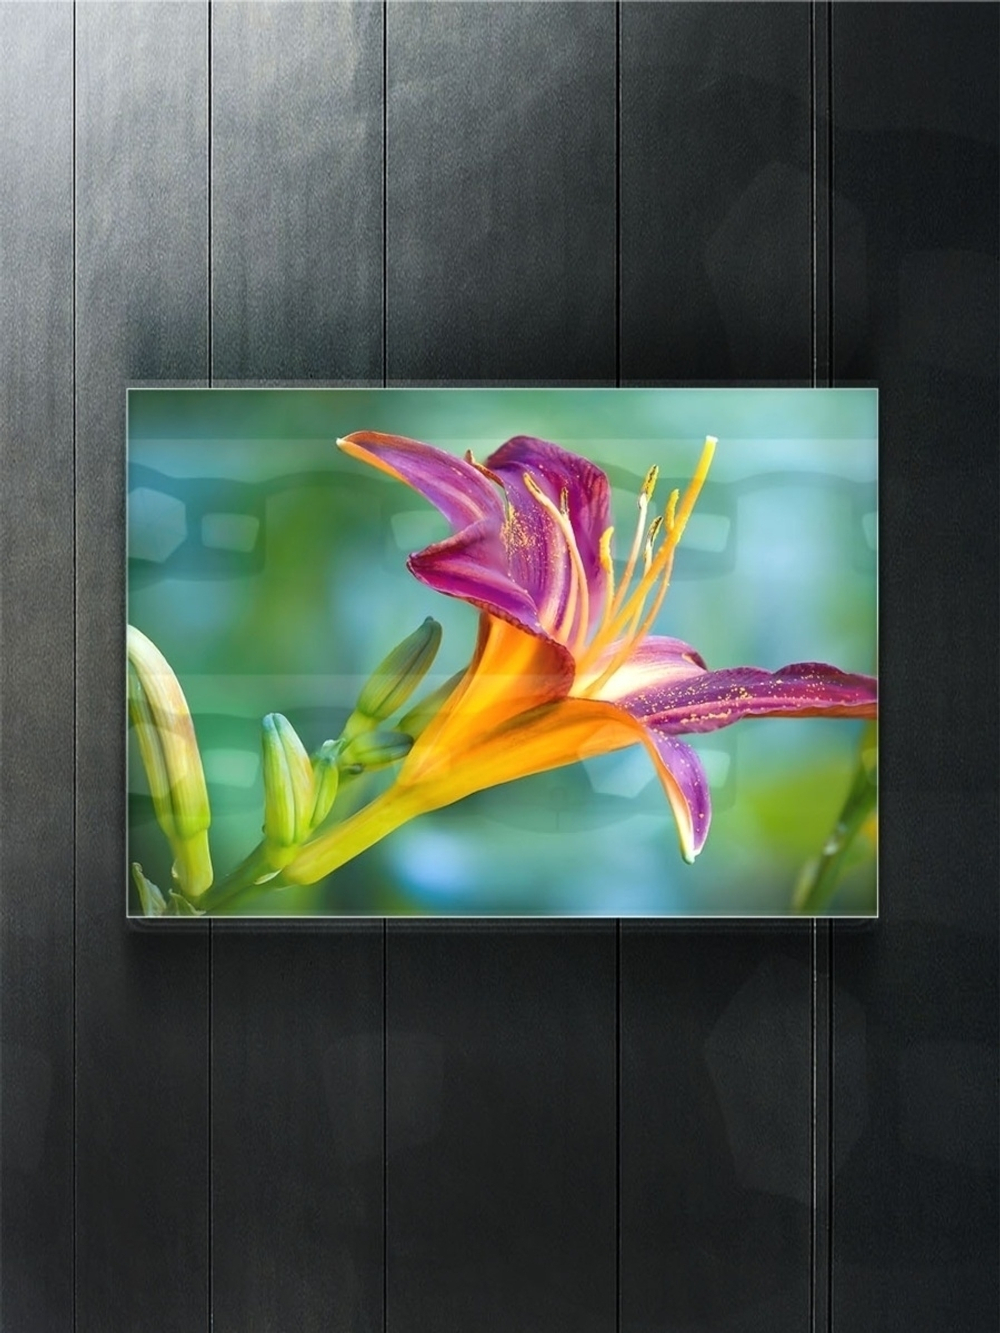 Модульная стеклянная интерьерная картина /Фотокартина на кухню /Летнее настроение /Цветы, 28x40 Декор для дома, подарок